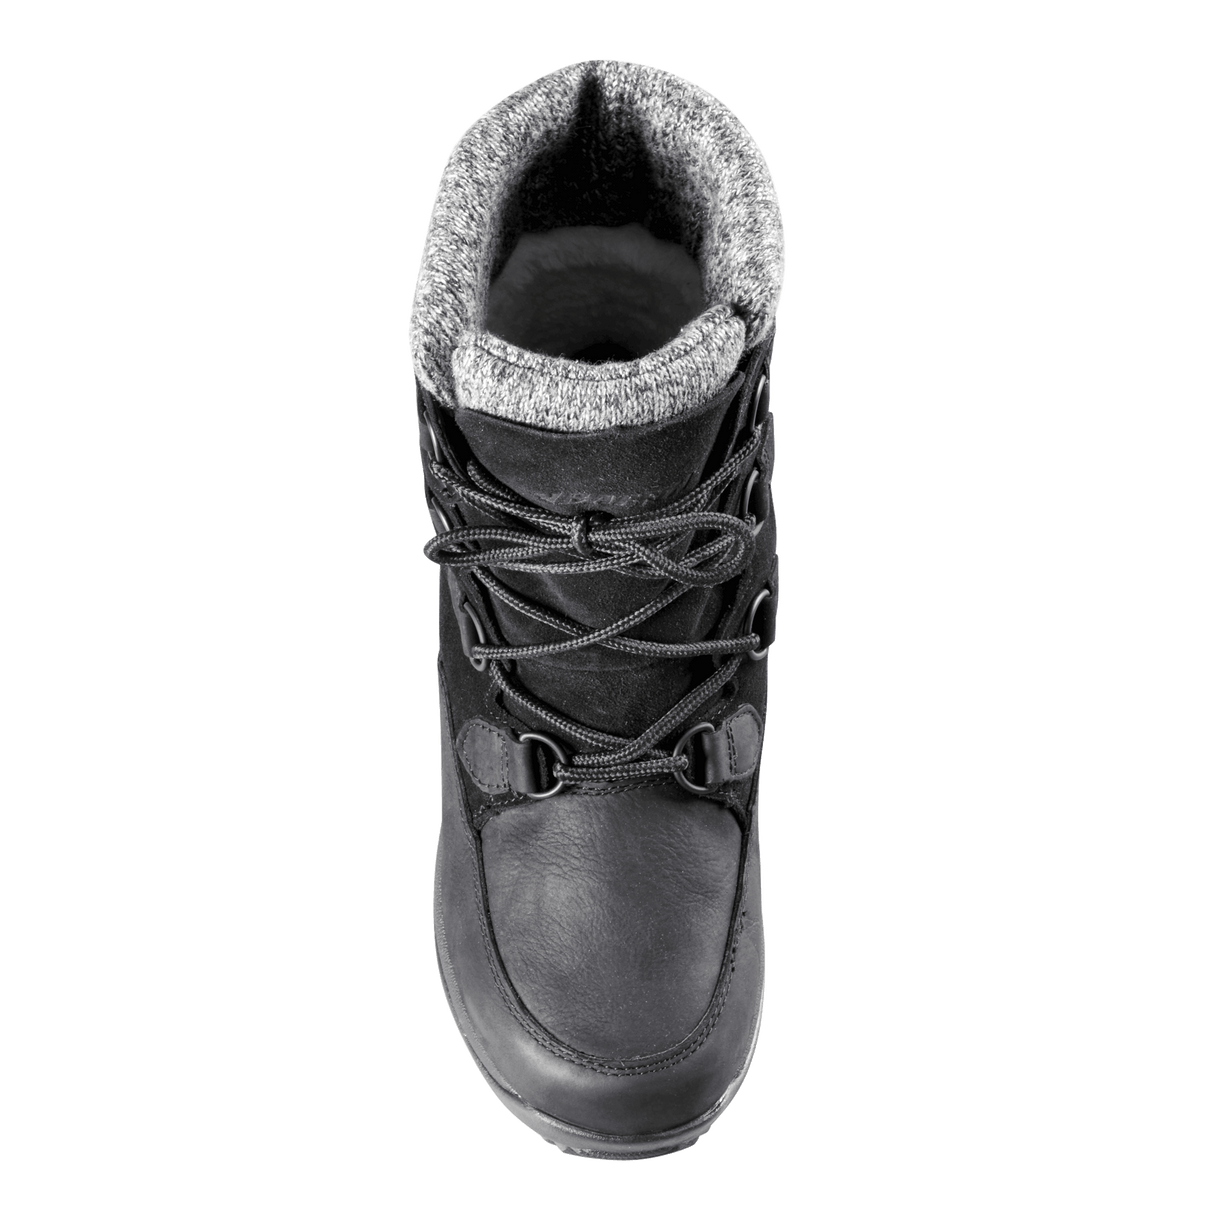 Baffin Womens Eldora Winter Boots  - 